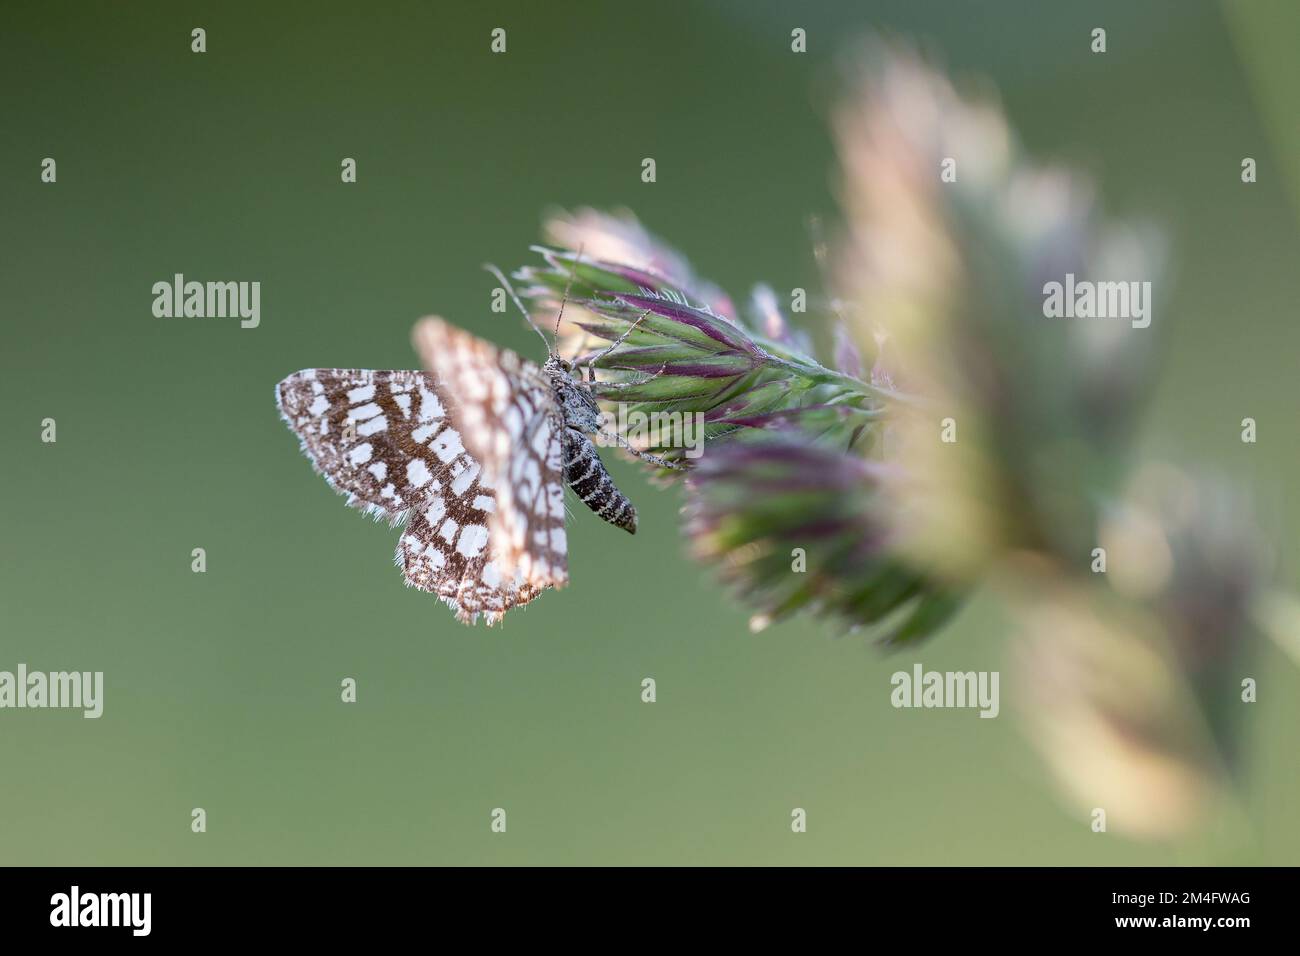 La Moth de Heath à lattes (Chiasmia clathrata) perçant sur la tige d'une plante. Le sujet des insectes, entomologie, collection d'insectes. Banque D'Images